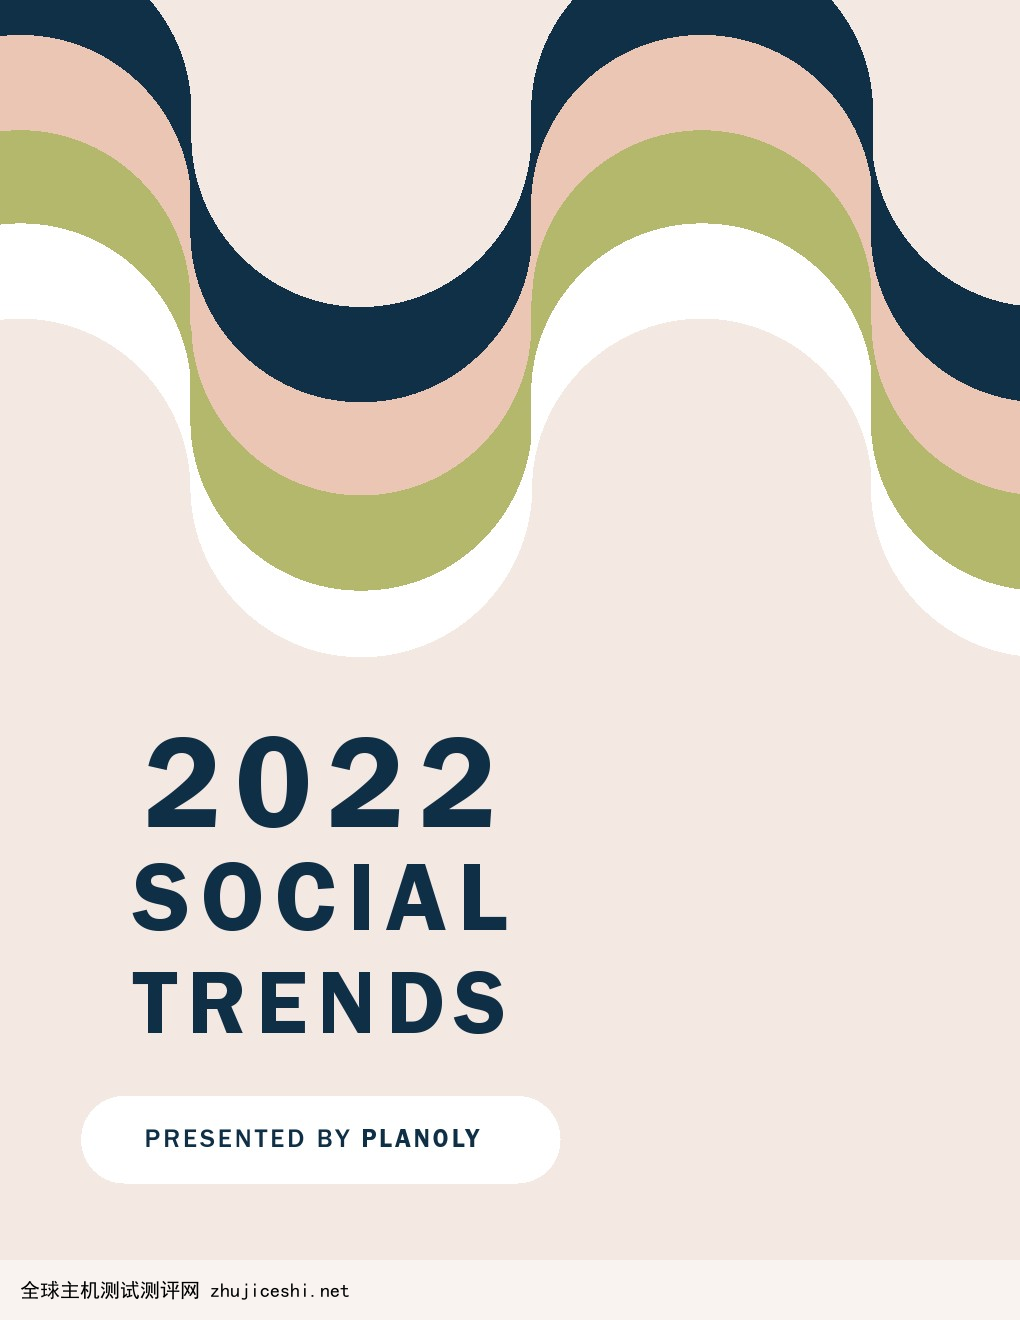 PLANOLY：2022年社会媒体趋势报告